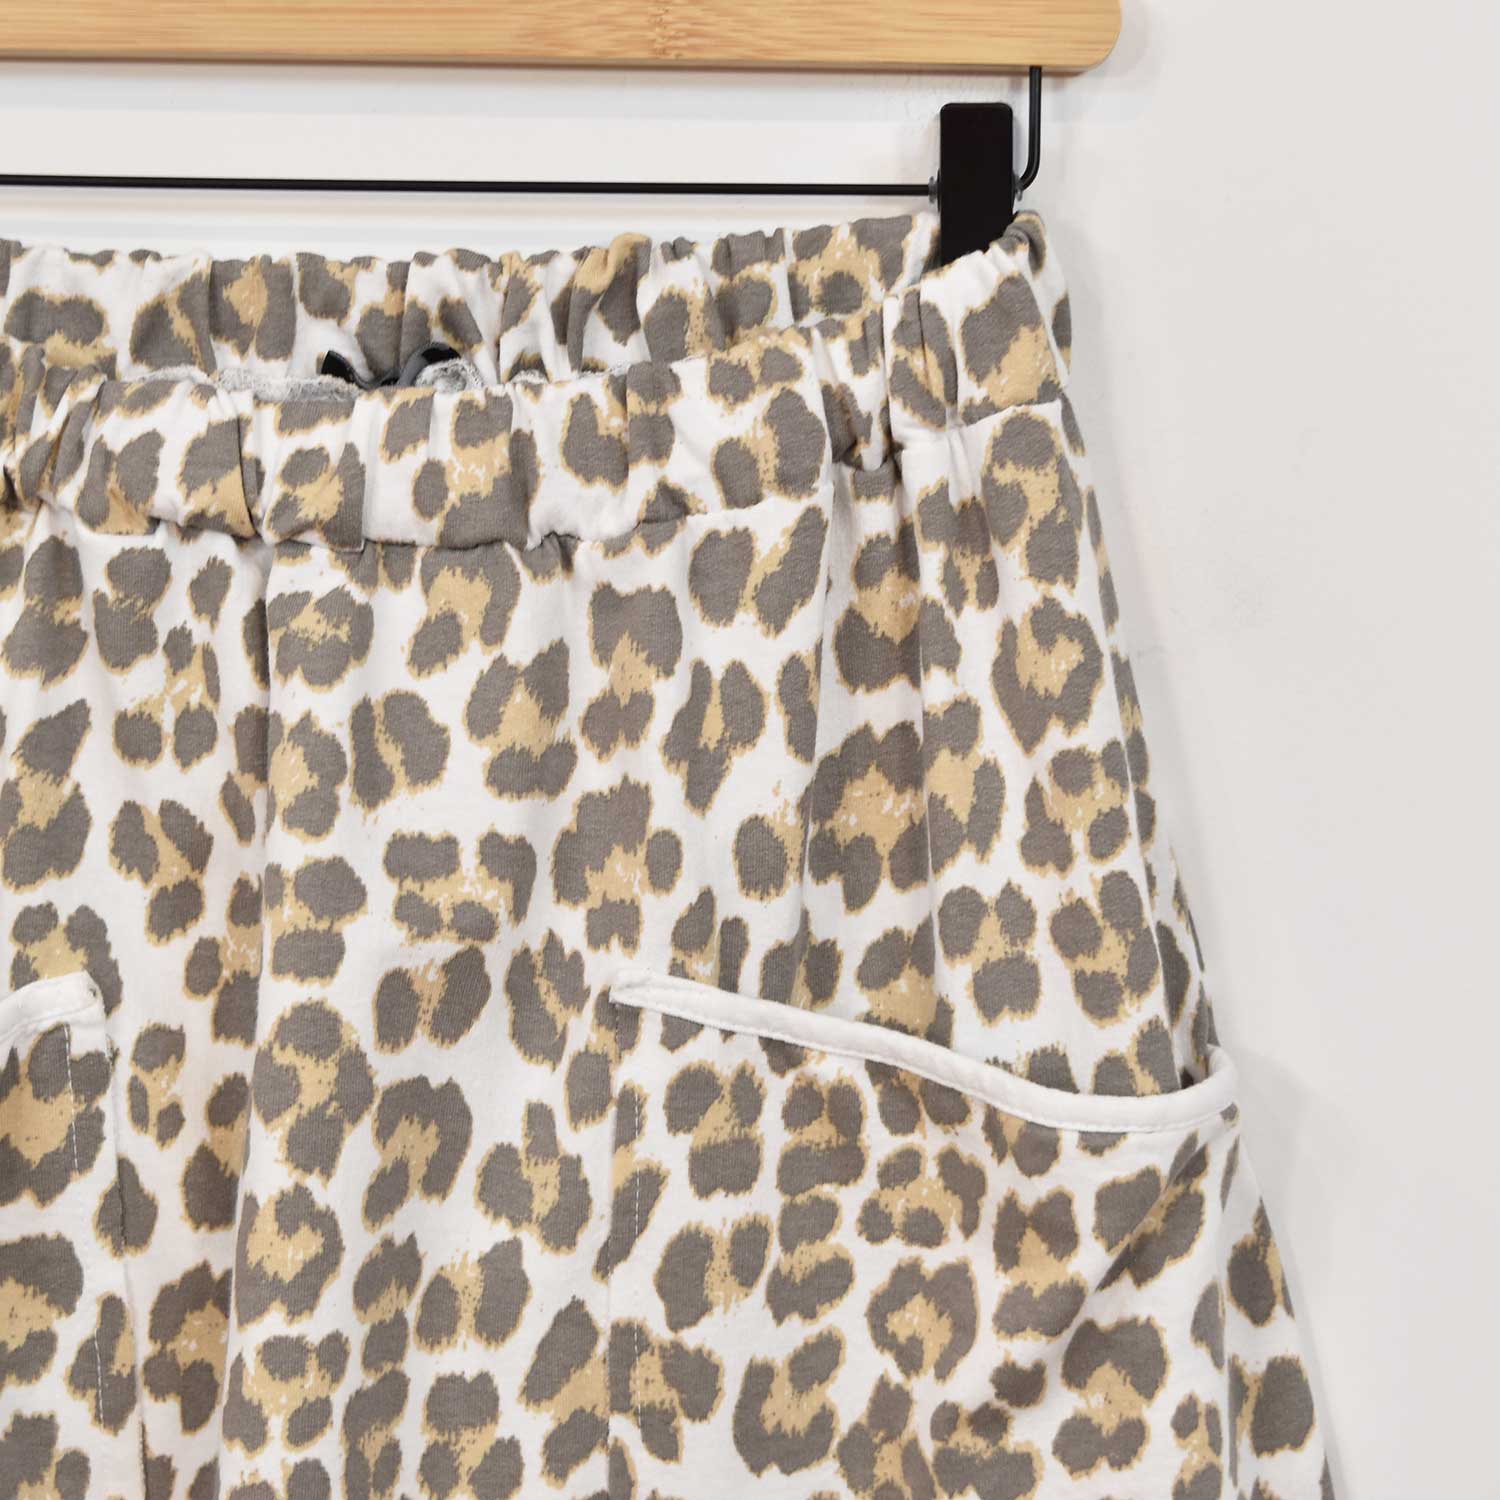 Pantalón baggy leopardo bolsillos